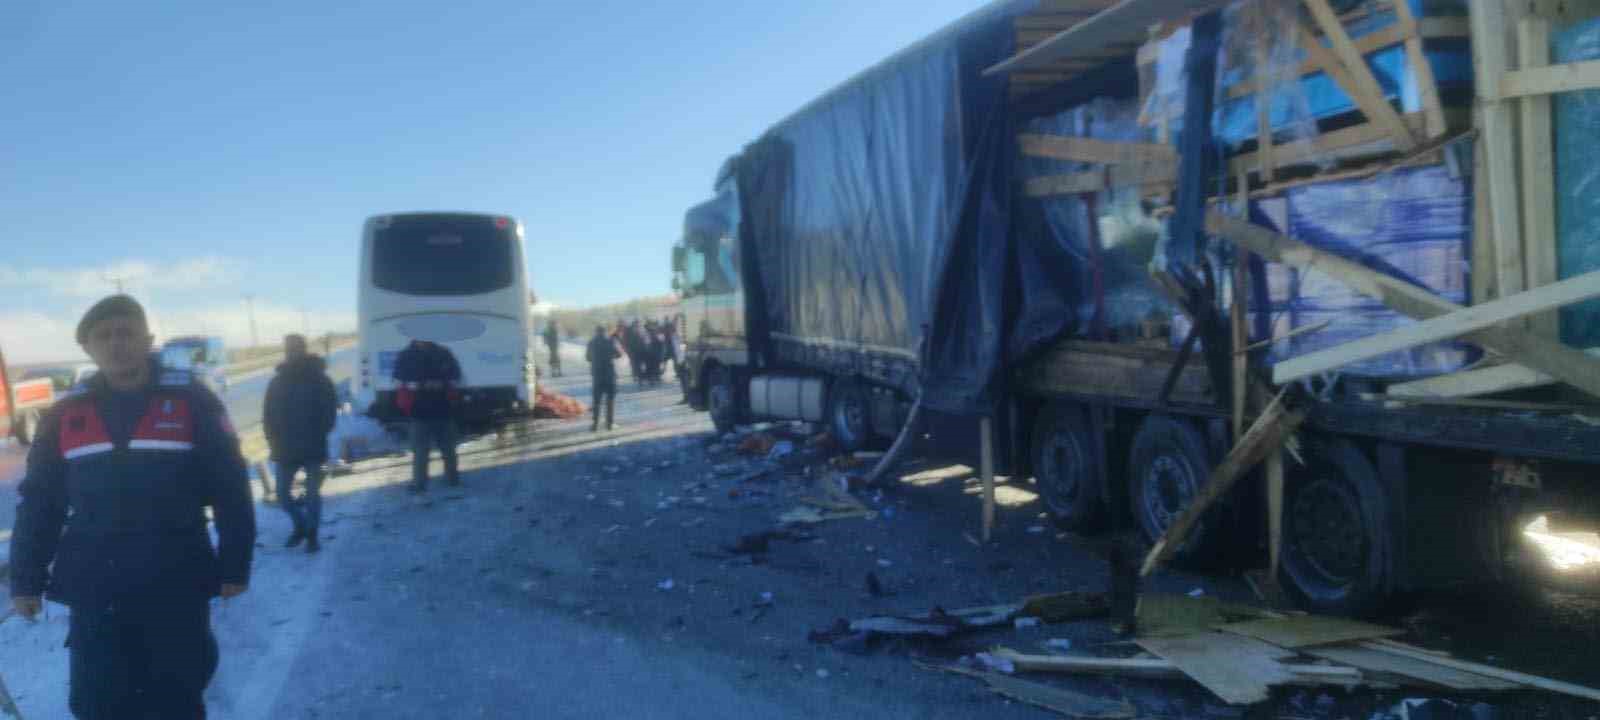 Sivas’ta Otobüs Kazası 1 Ölü Çok Sayıda Yaralı Var